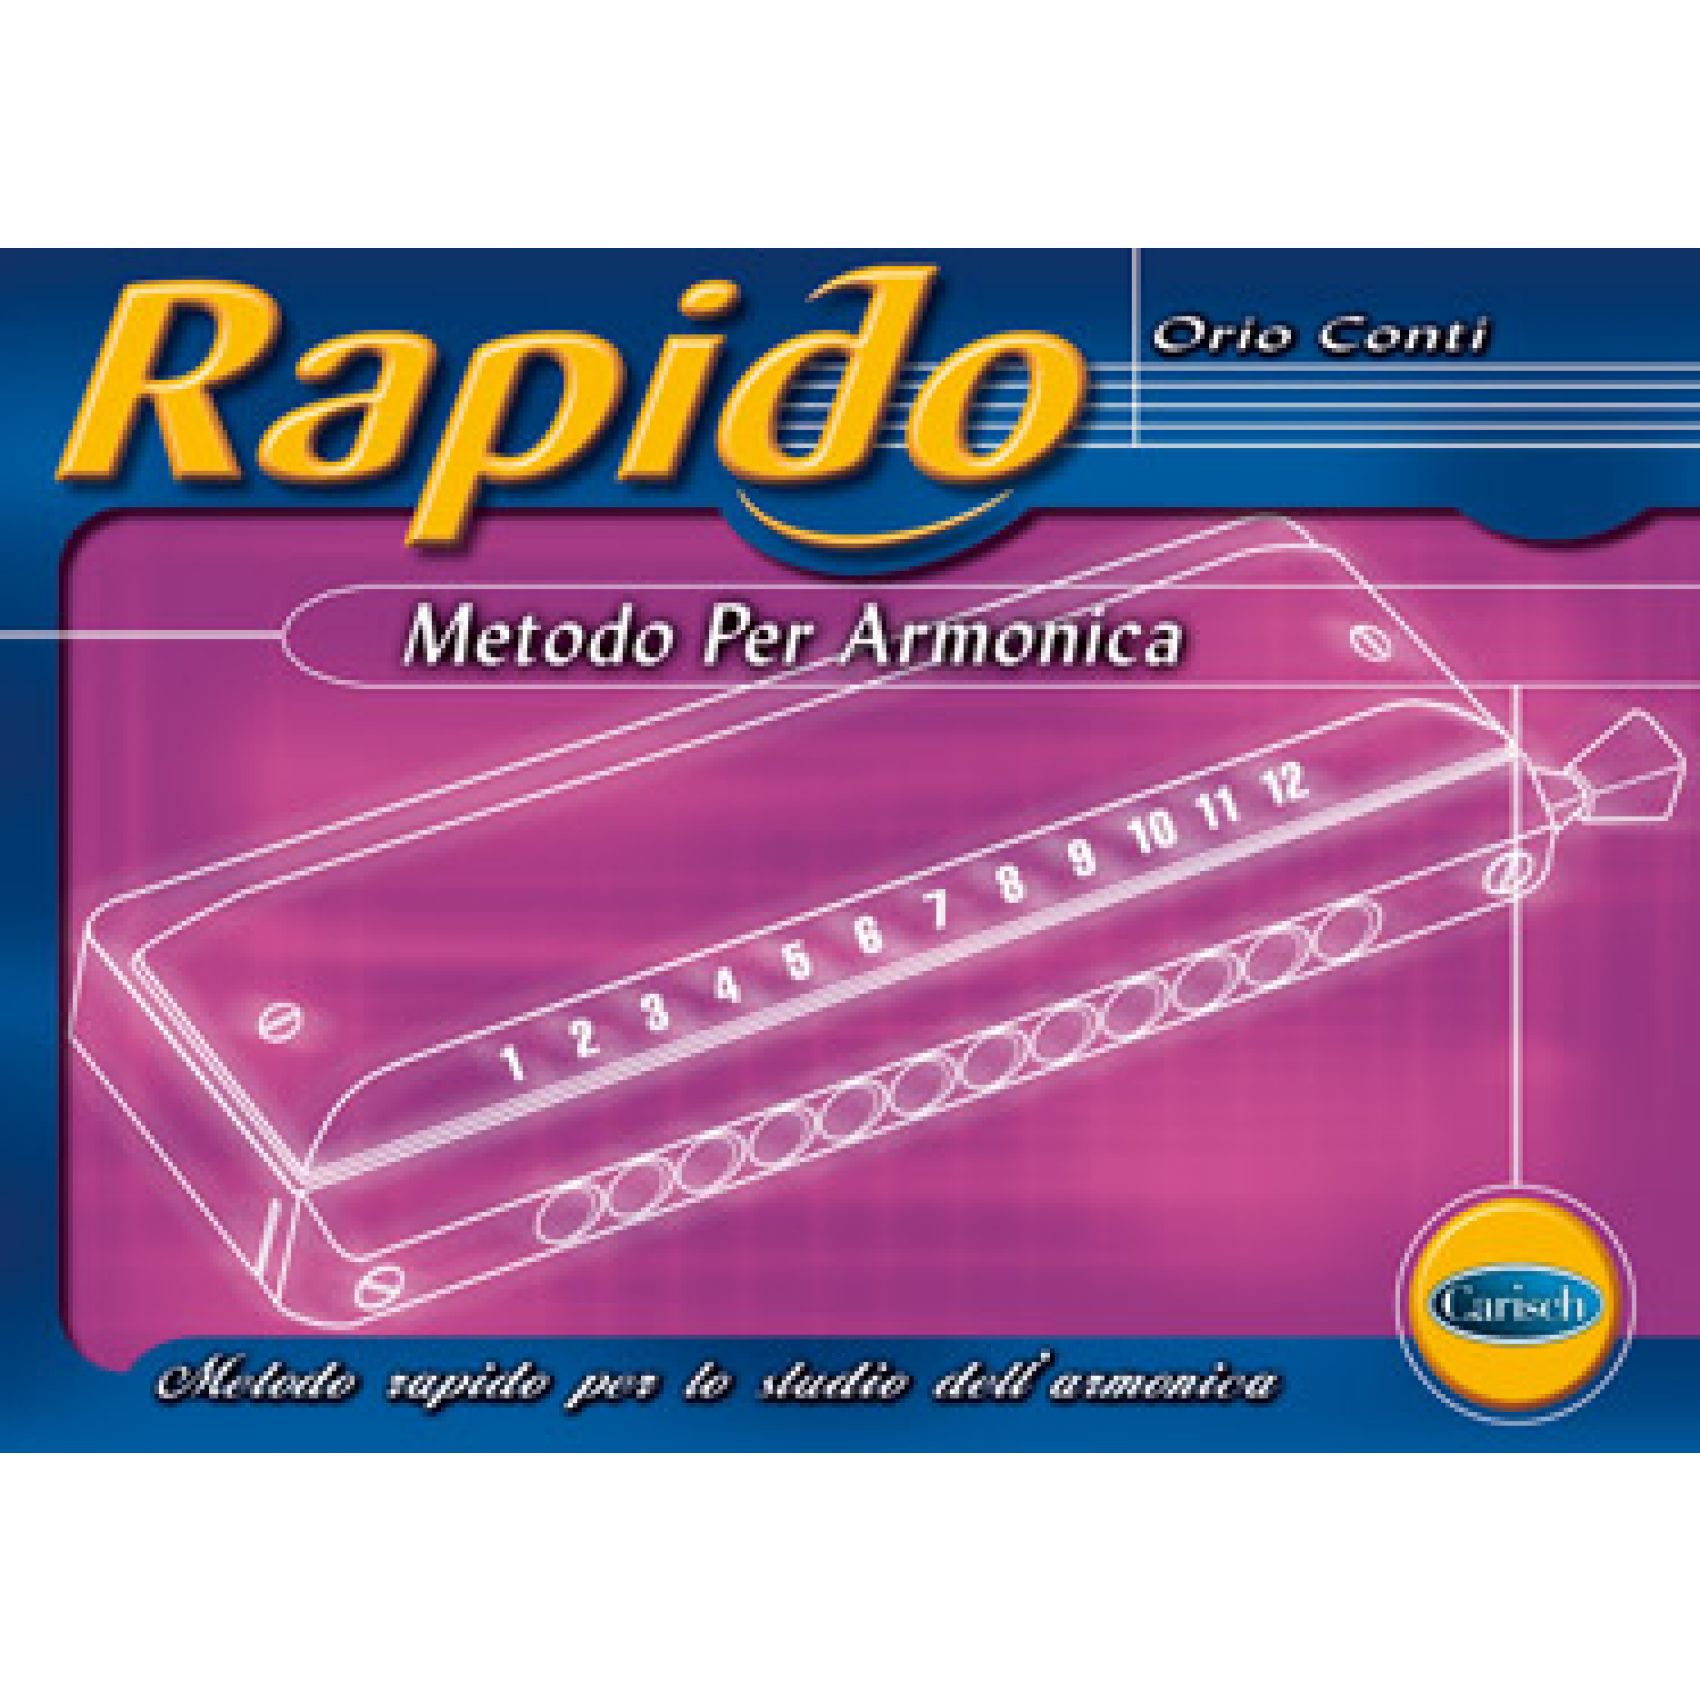 CARISCH Conti, Orio - RAPIDO - METODO PER ARMONICA